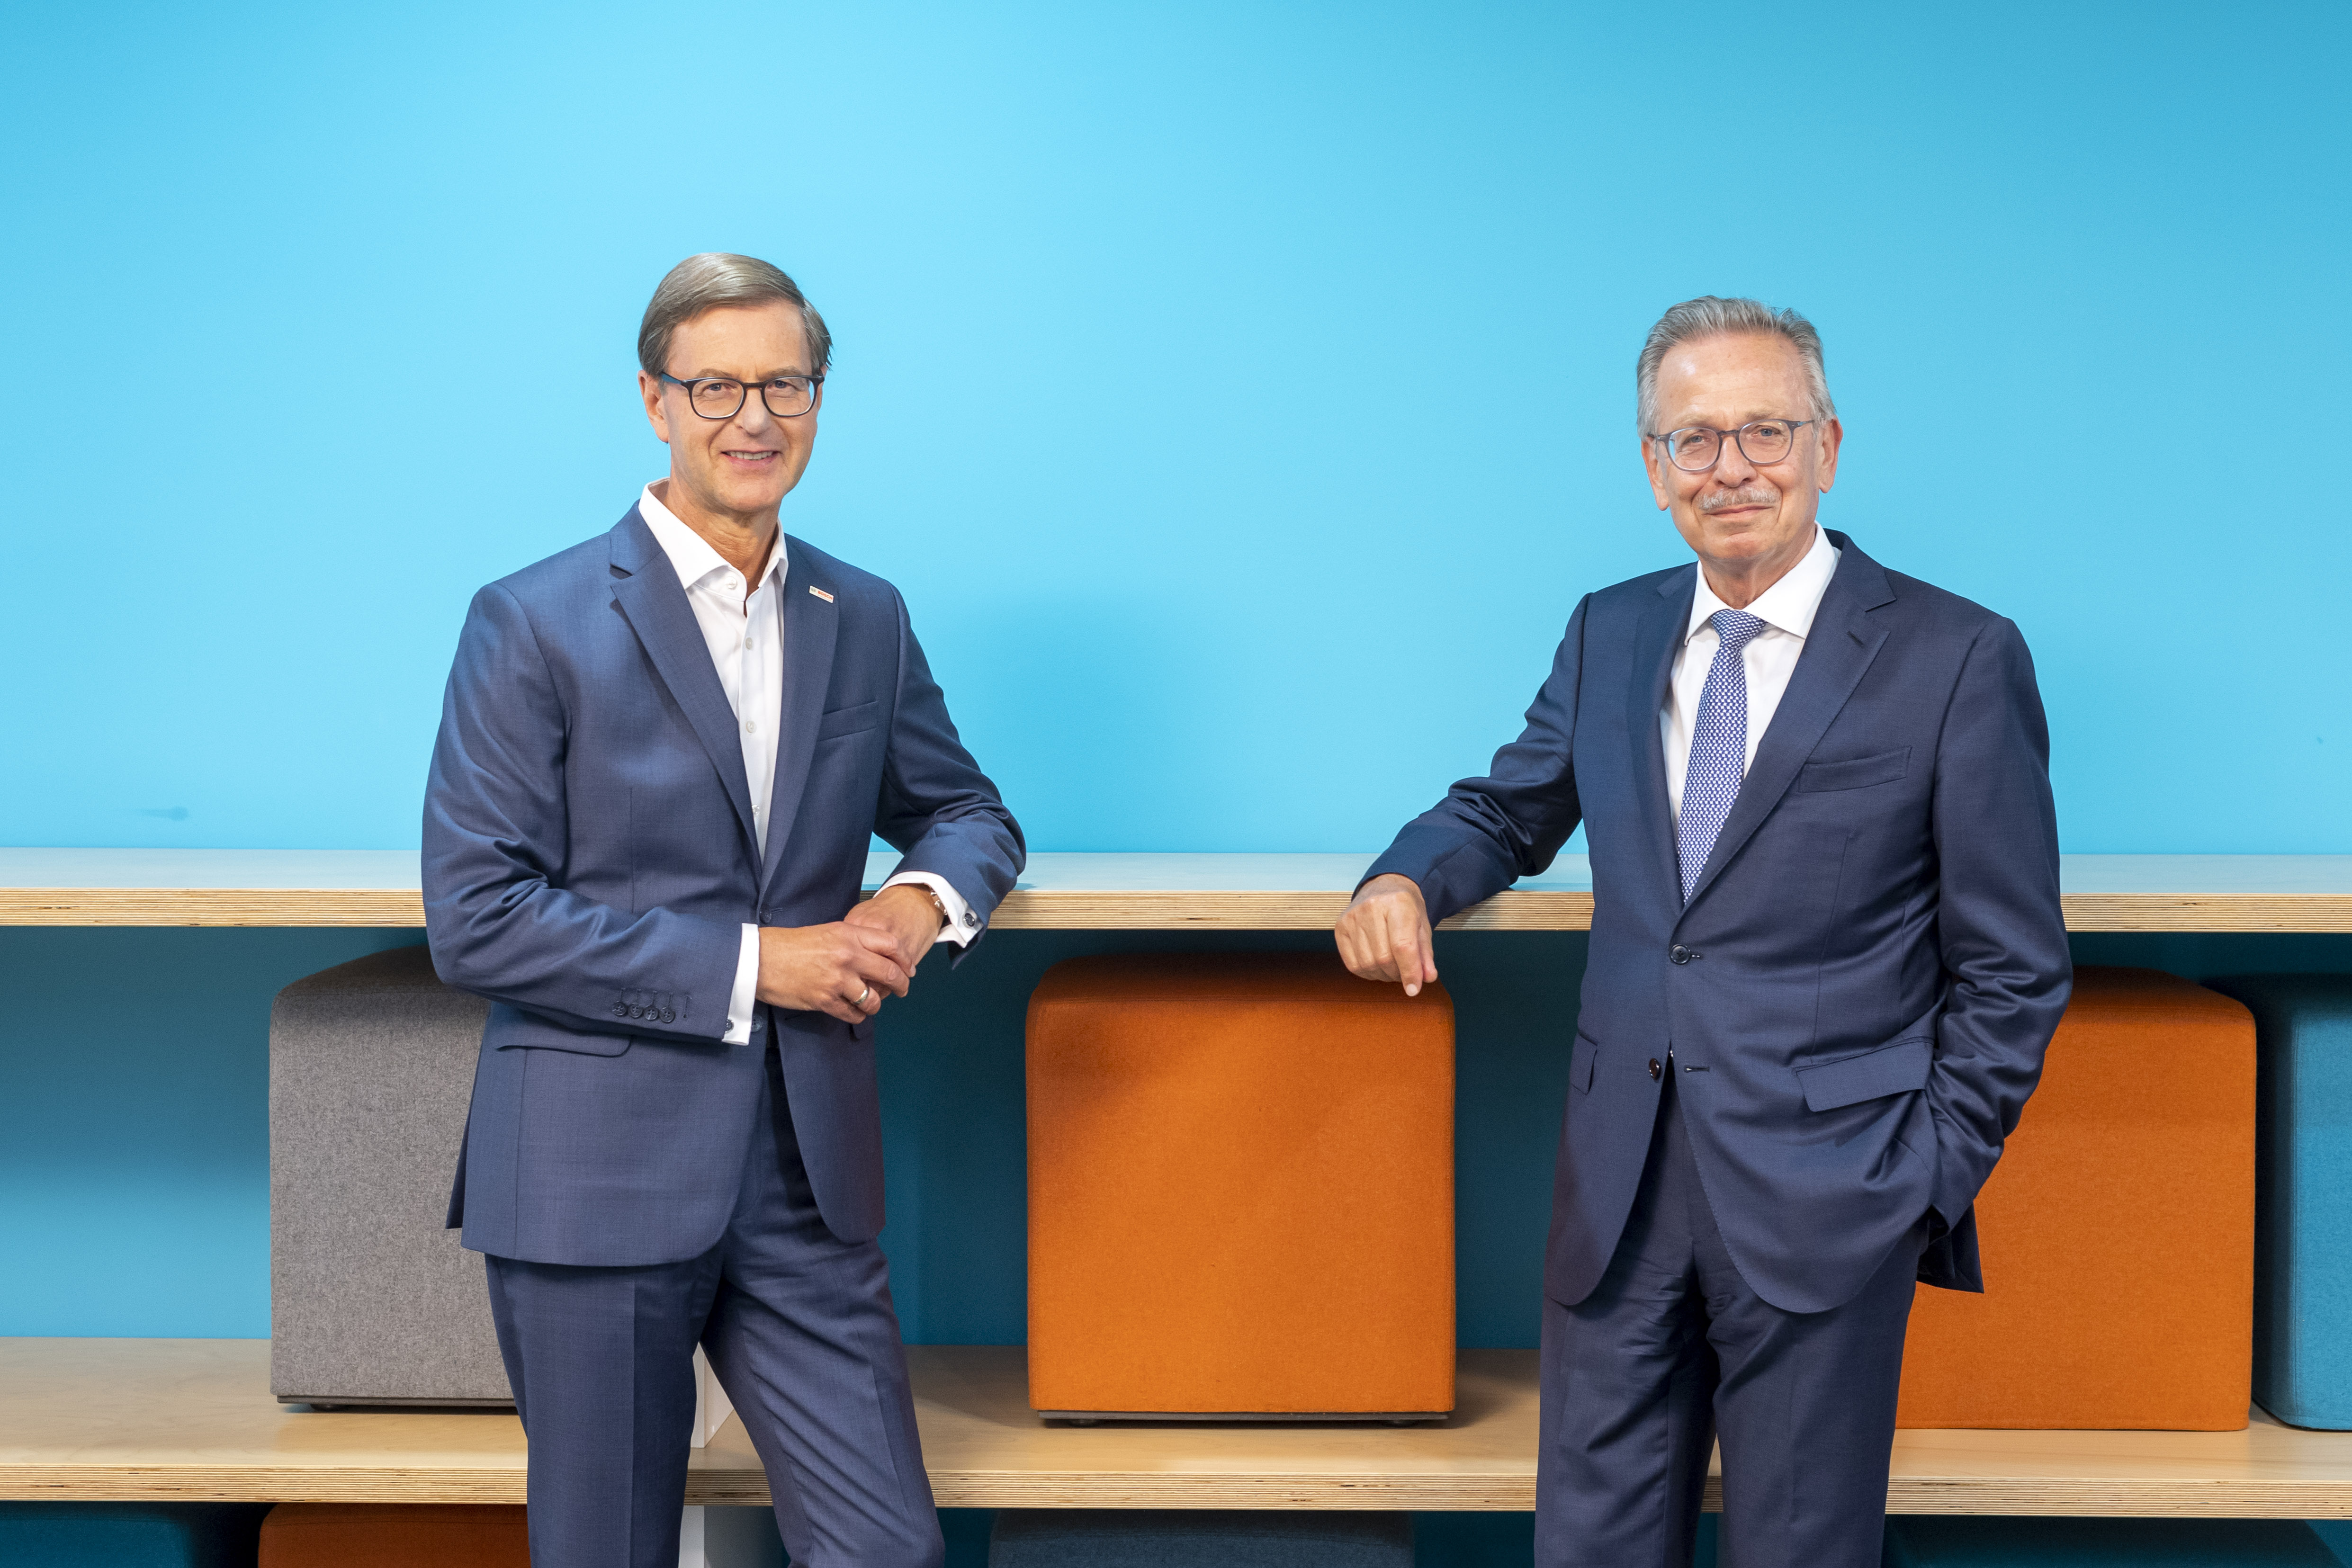 Personální změny ve společnostech Robert Bosch GmbH a Robert Bosch Industrietreuhand KG